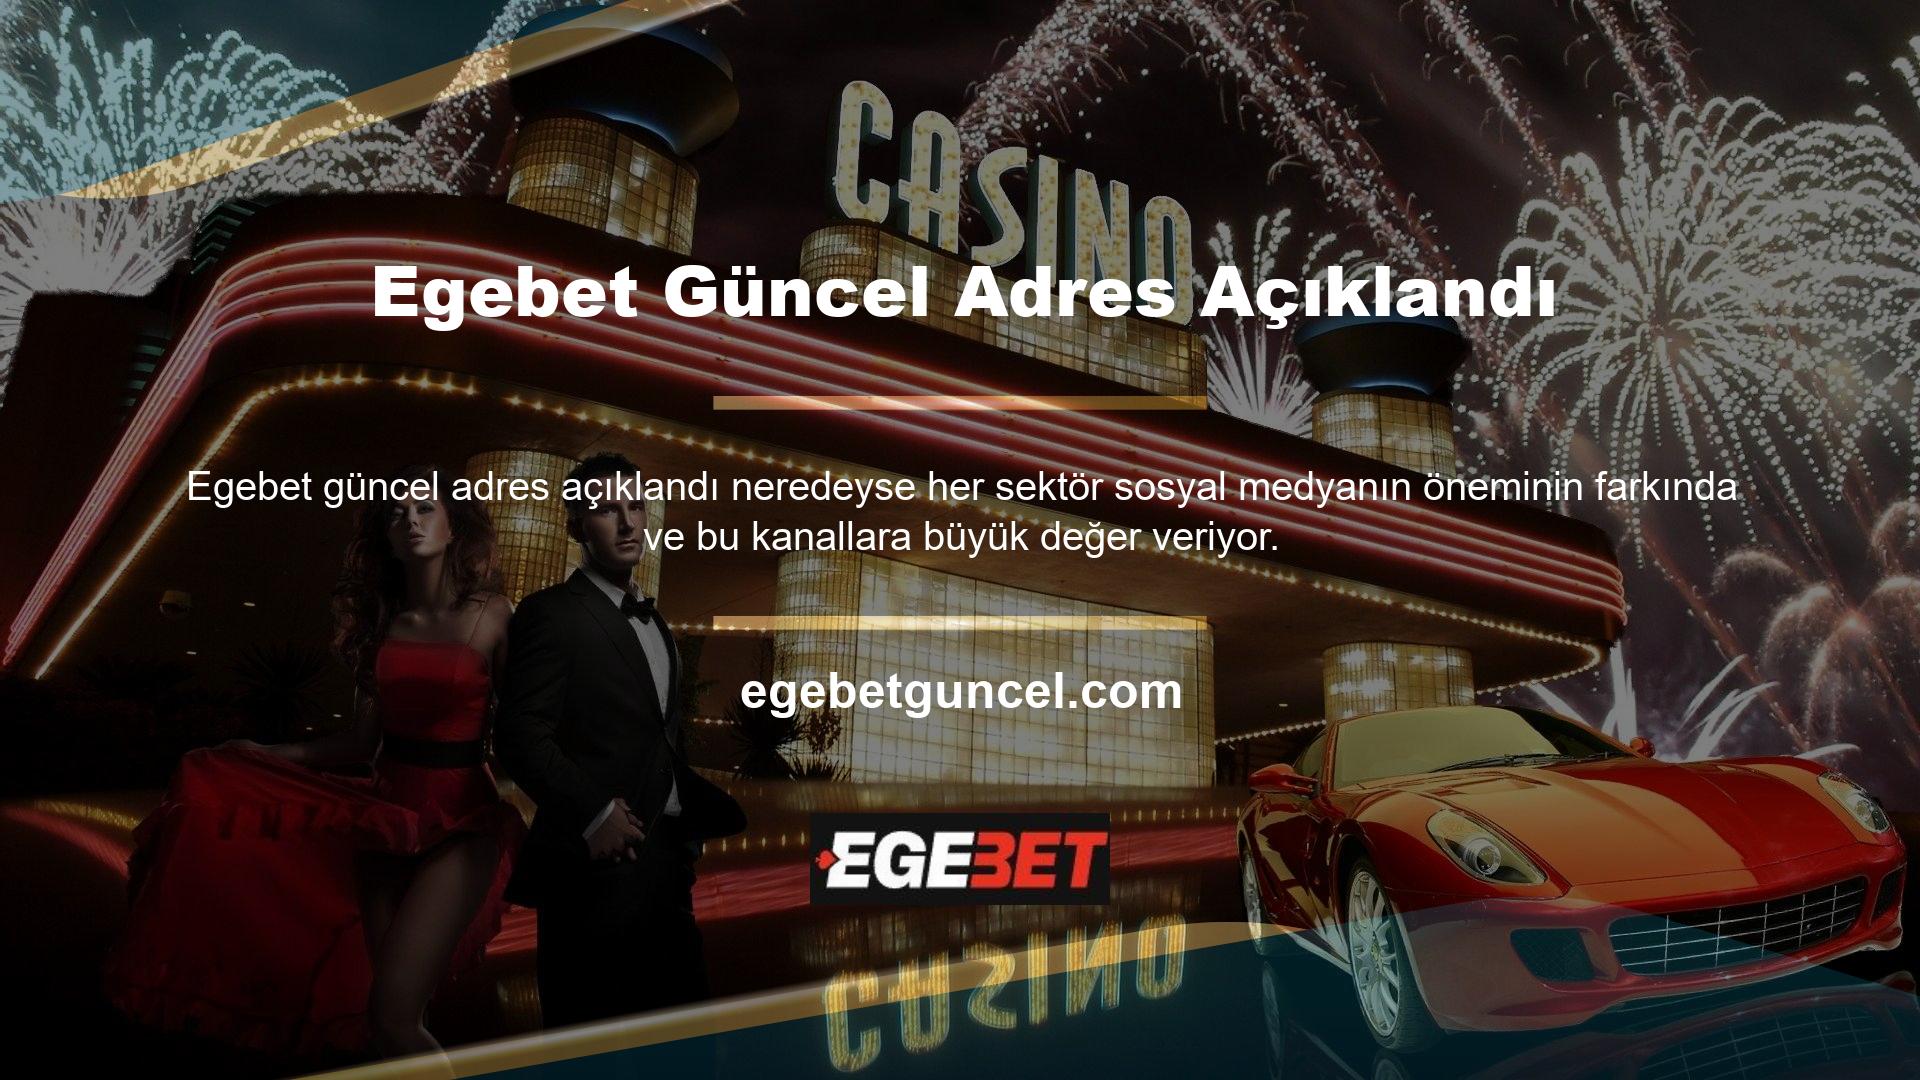 Bahis sitesi Egebet, sosyal medyaya önem veren şirketlerden biridir